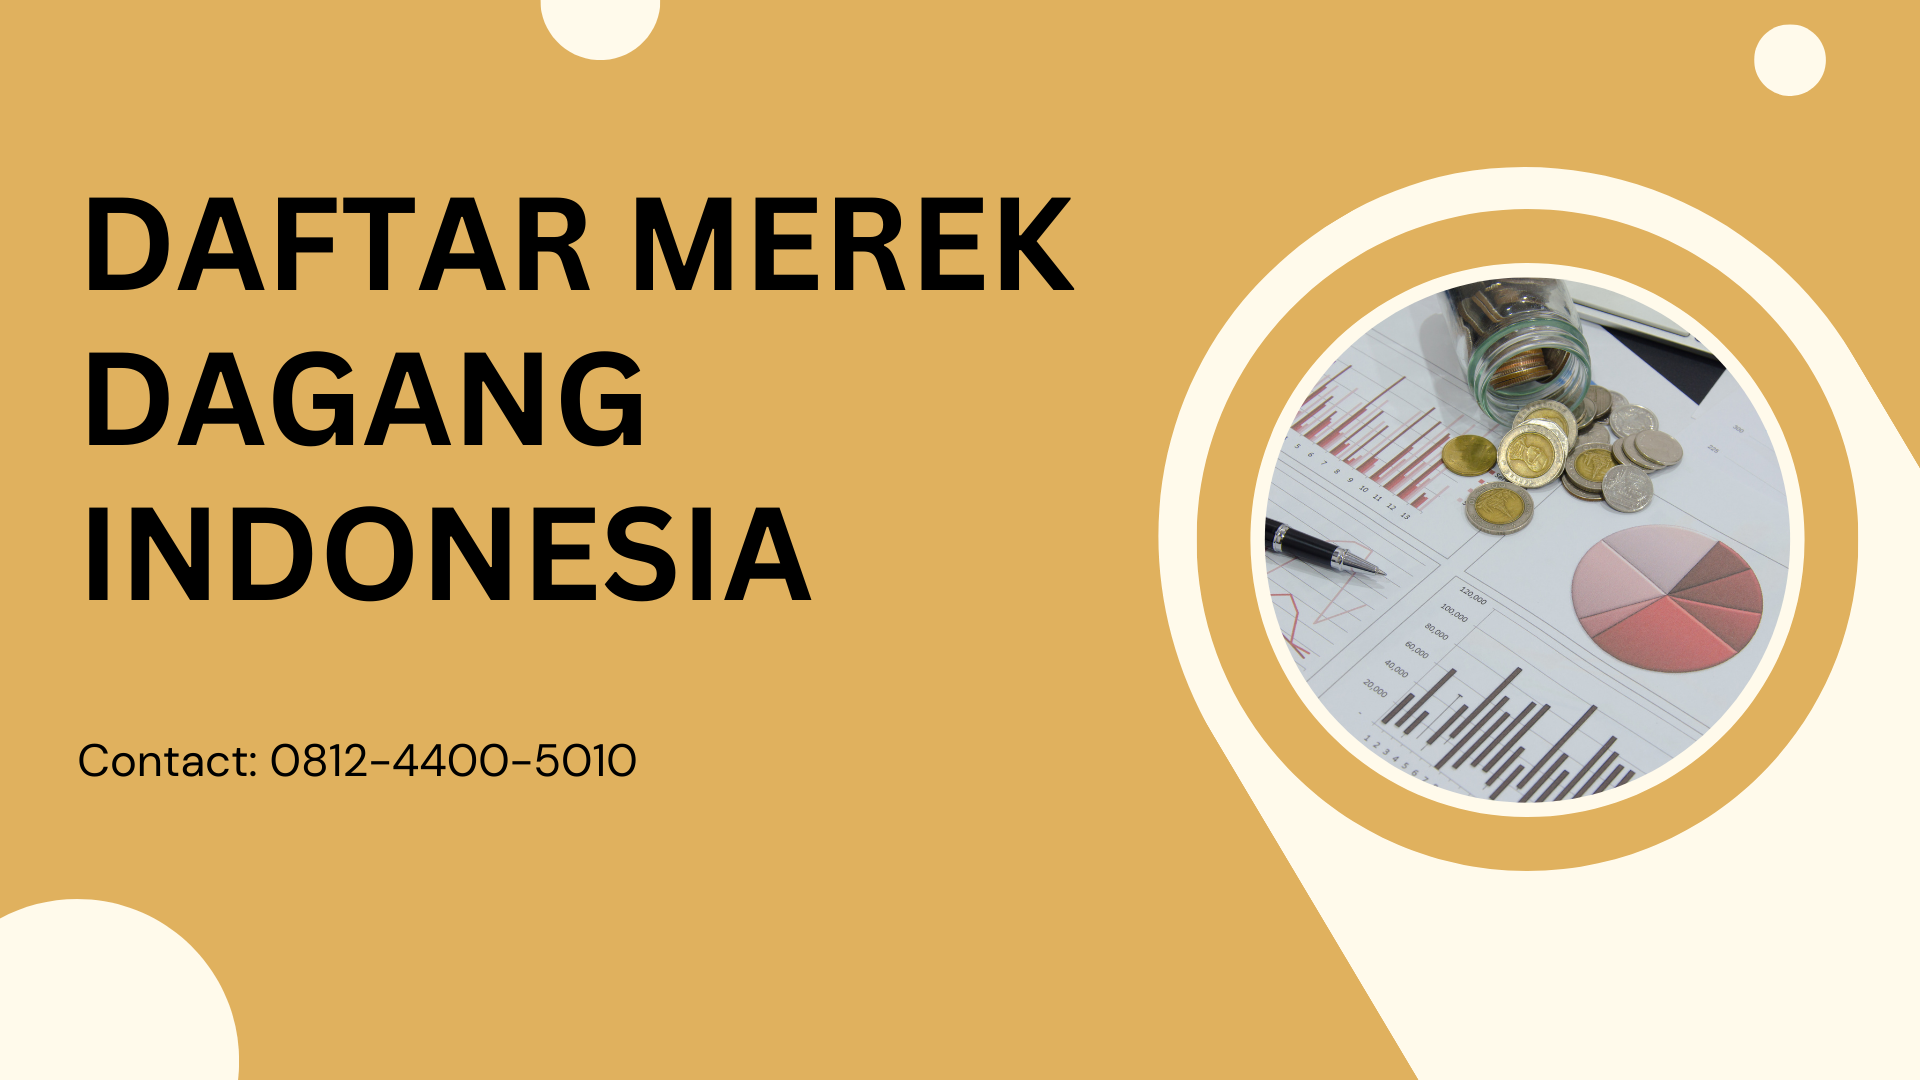 Daftar Merek Dagang Indonesia